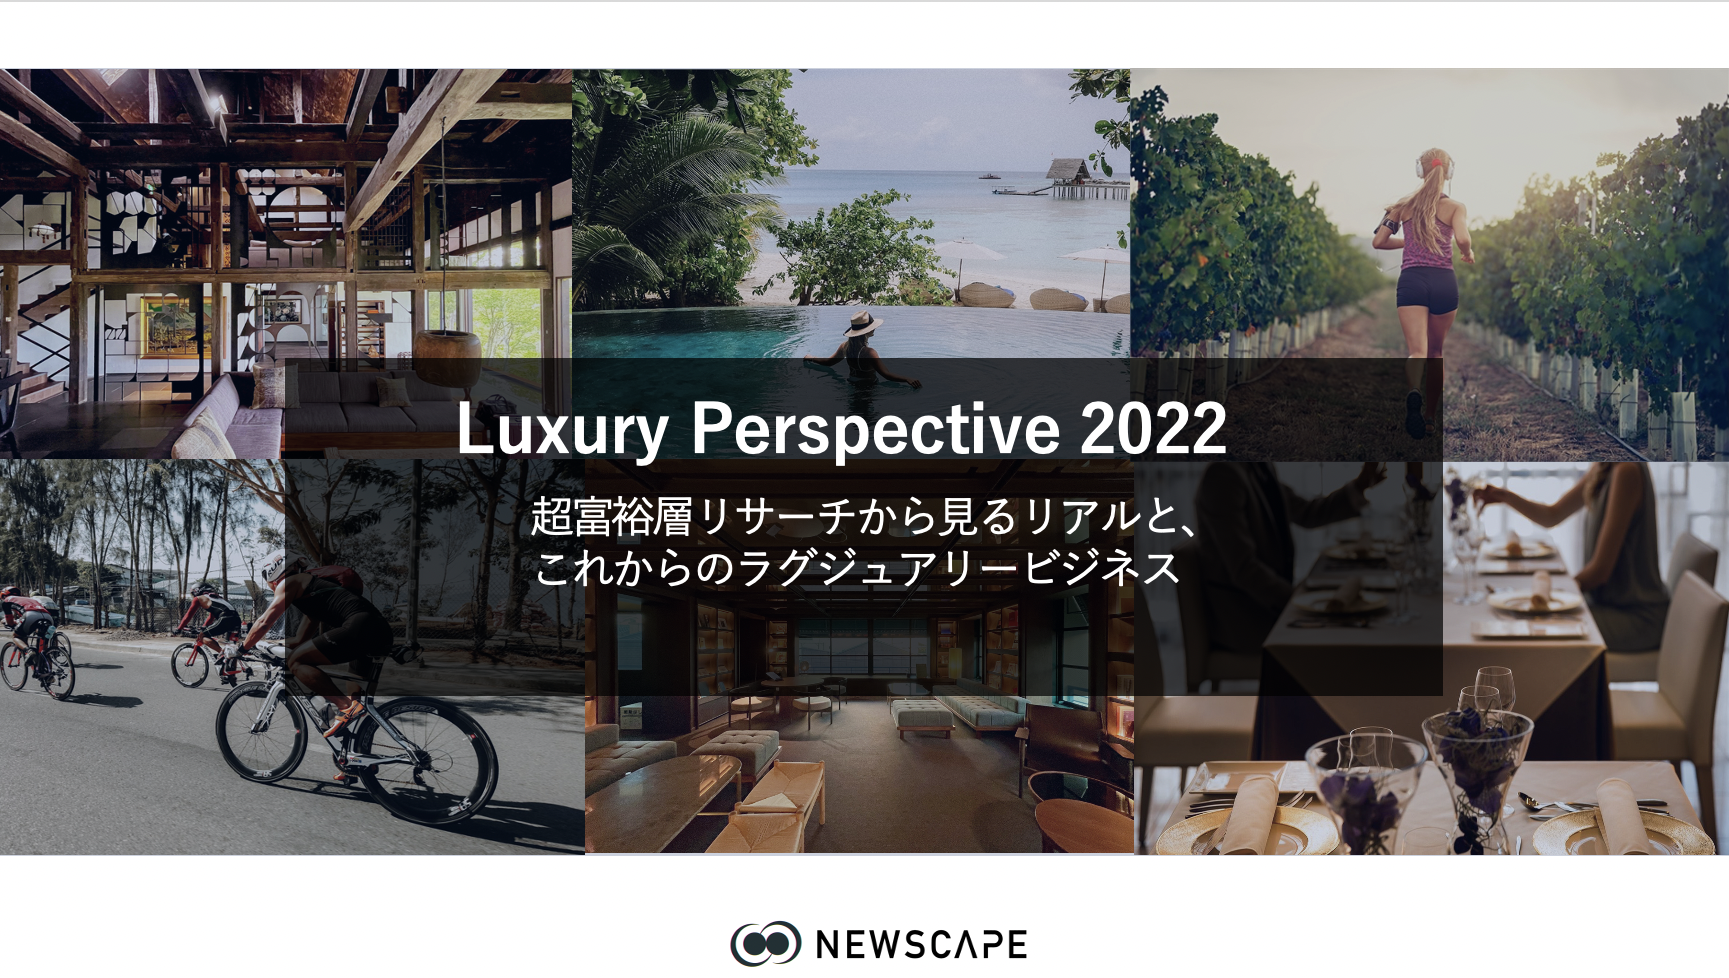 三井不動産・S&Eサローネで「Luxury Perspective 2022」の講演を実施